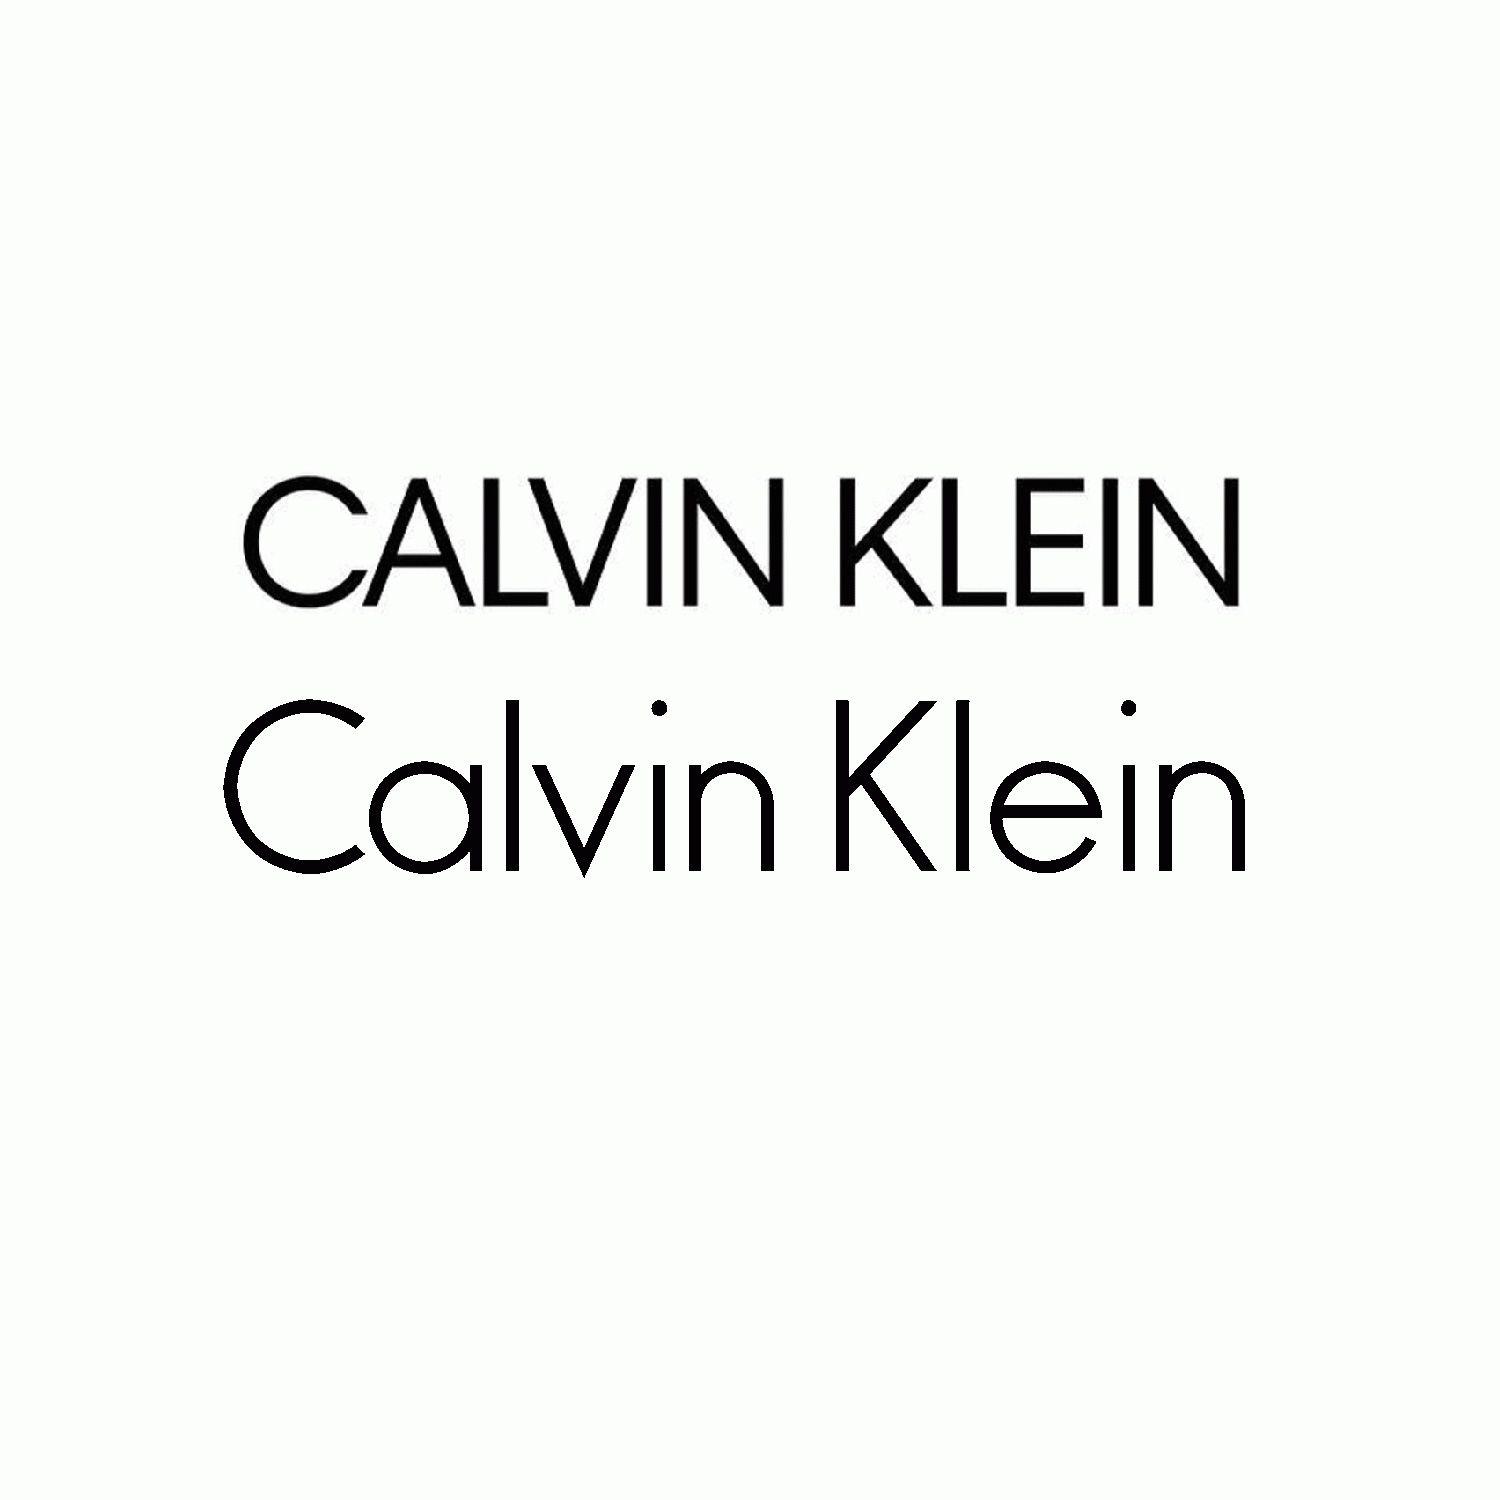 Calvin Klein New Logo - Calvin klein new Logos